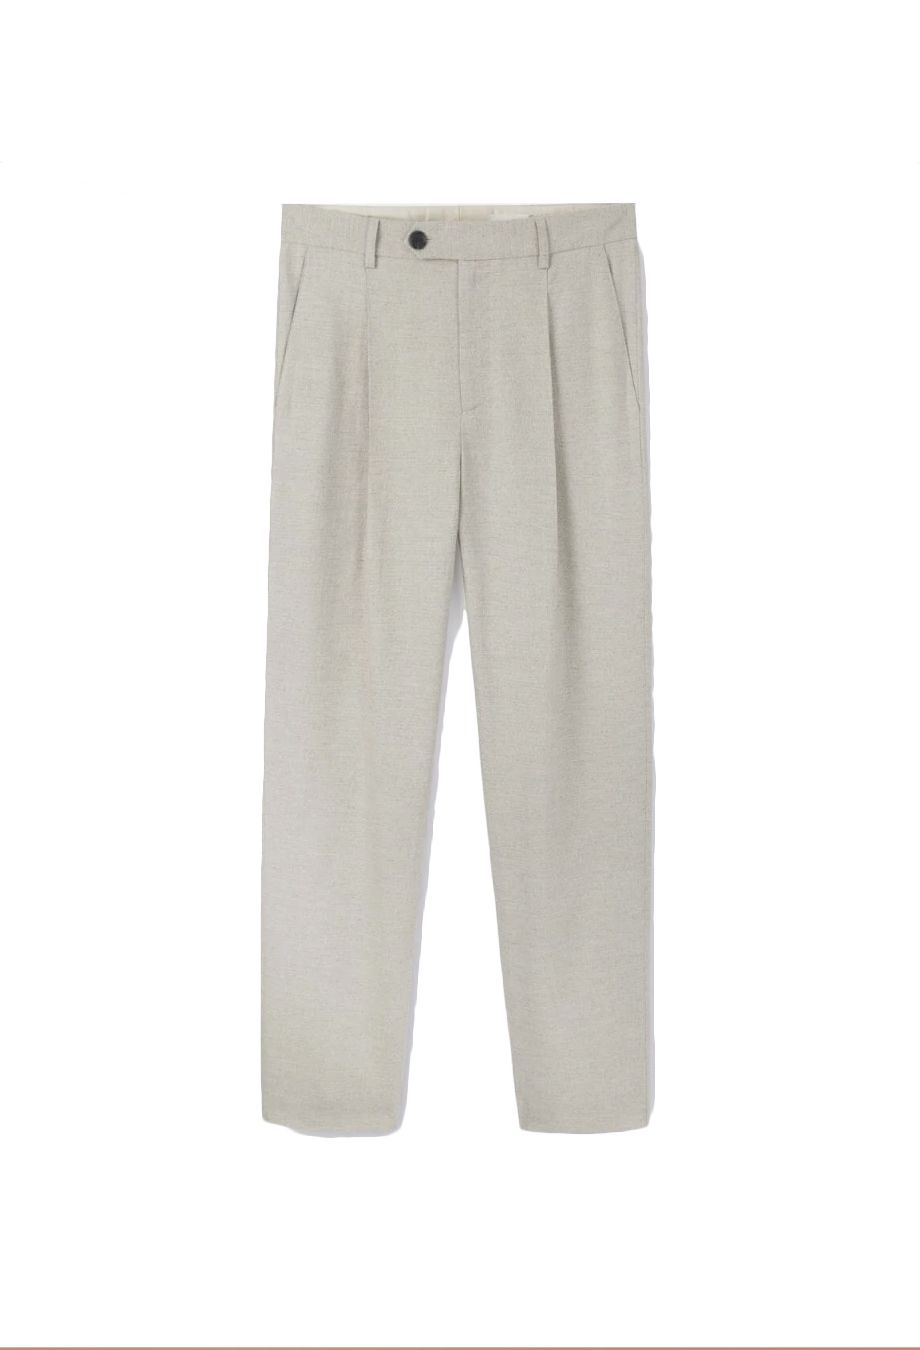 Palm Beach Men's Oxford Suit Seprate Pant, Natural Linen, 30W x 30L at  Amazon Men's Clothing store